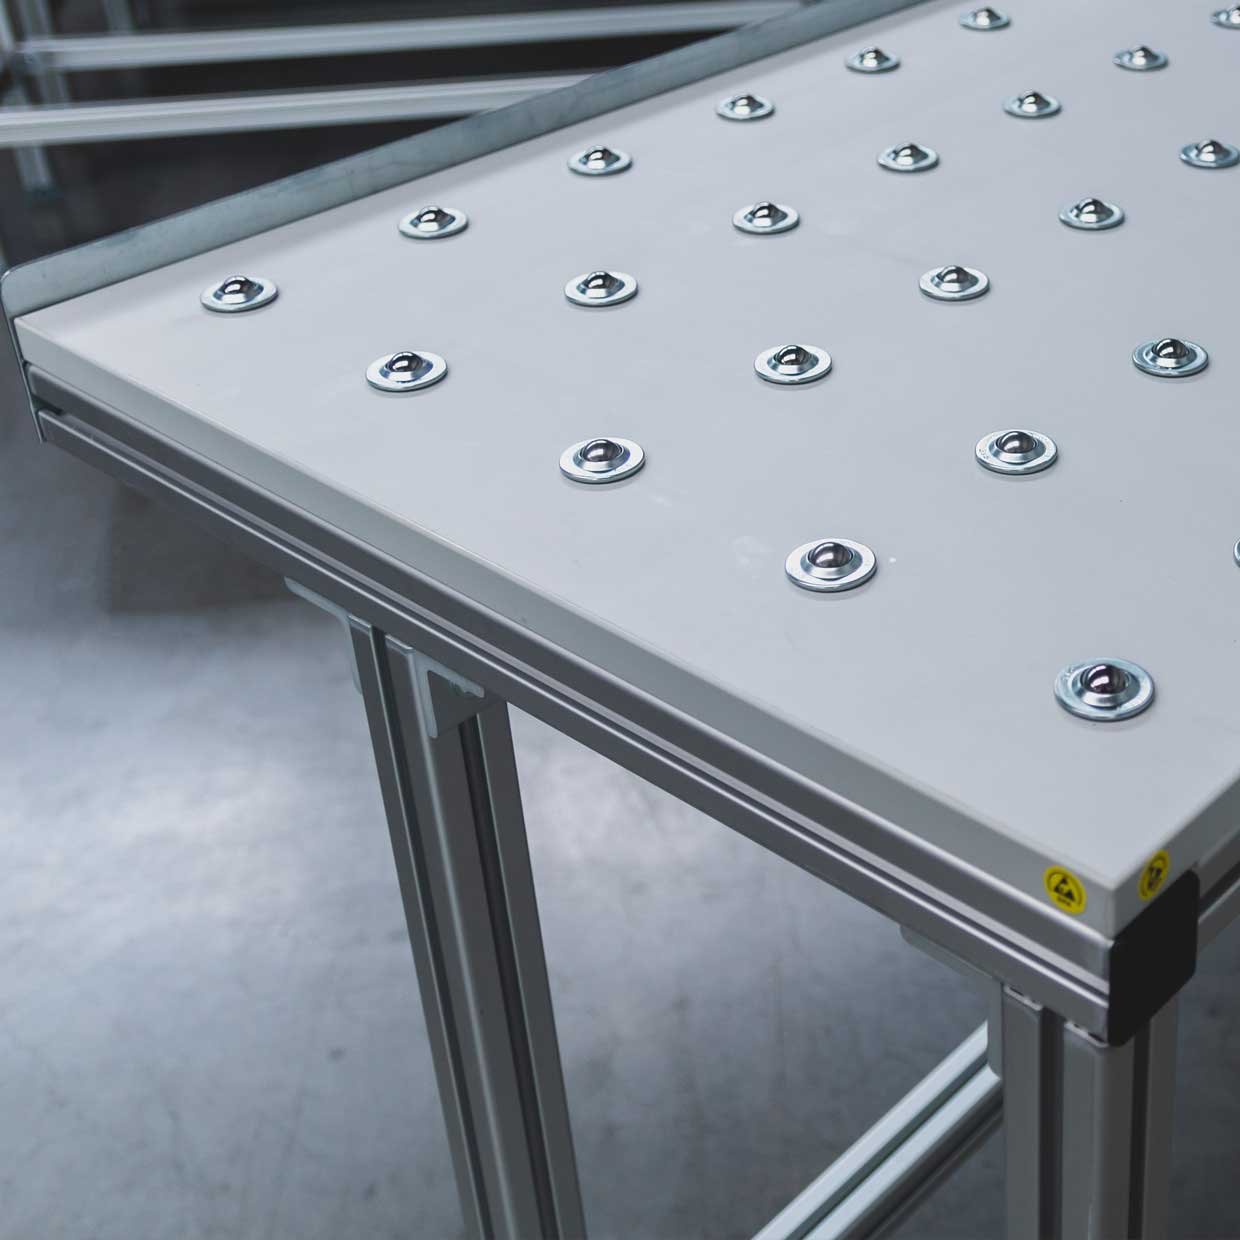 Blat stołu z osadzonymi, odpornymi na zużycie i tarcia kółkami, na ramie podstawy wykonanej z aluminiowych profili kwadratowych.